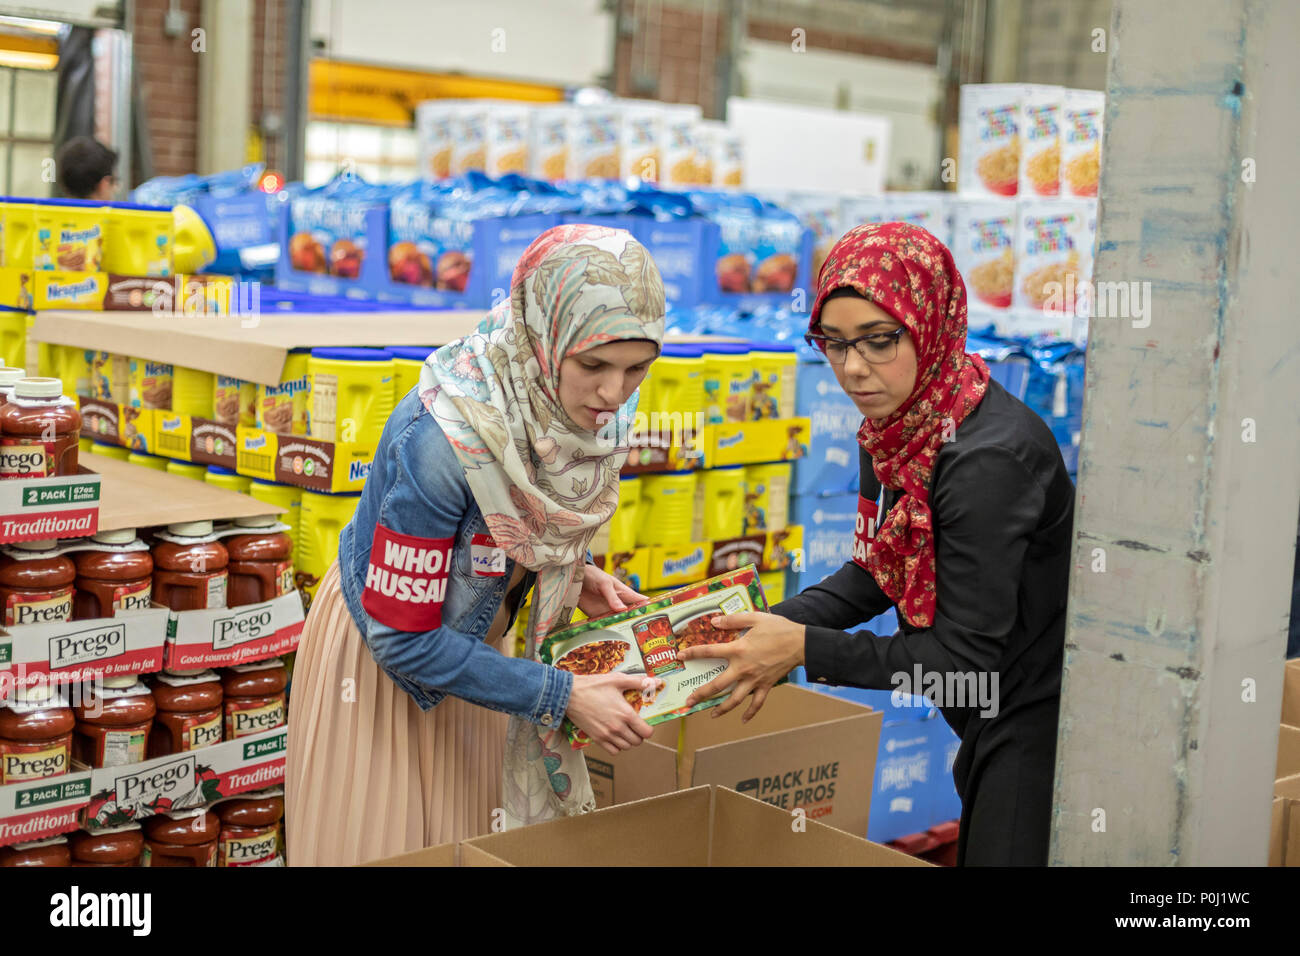 Novi, Michigan USA - 9 juin 2018 - Les bénévoles musulmans boîtes alimentaires forfait pour les plus démunis de la région de Detroit durant le mois de Ramadan. Les musulmans sont susceptibles de contribuer à des activités de bienfaisance au cours du mois. Crédit : Jim West/Alamy Live News Banque D'Images